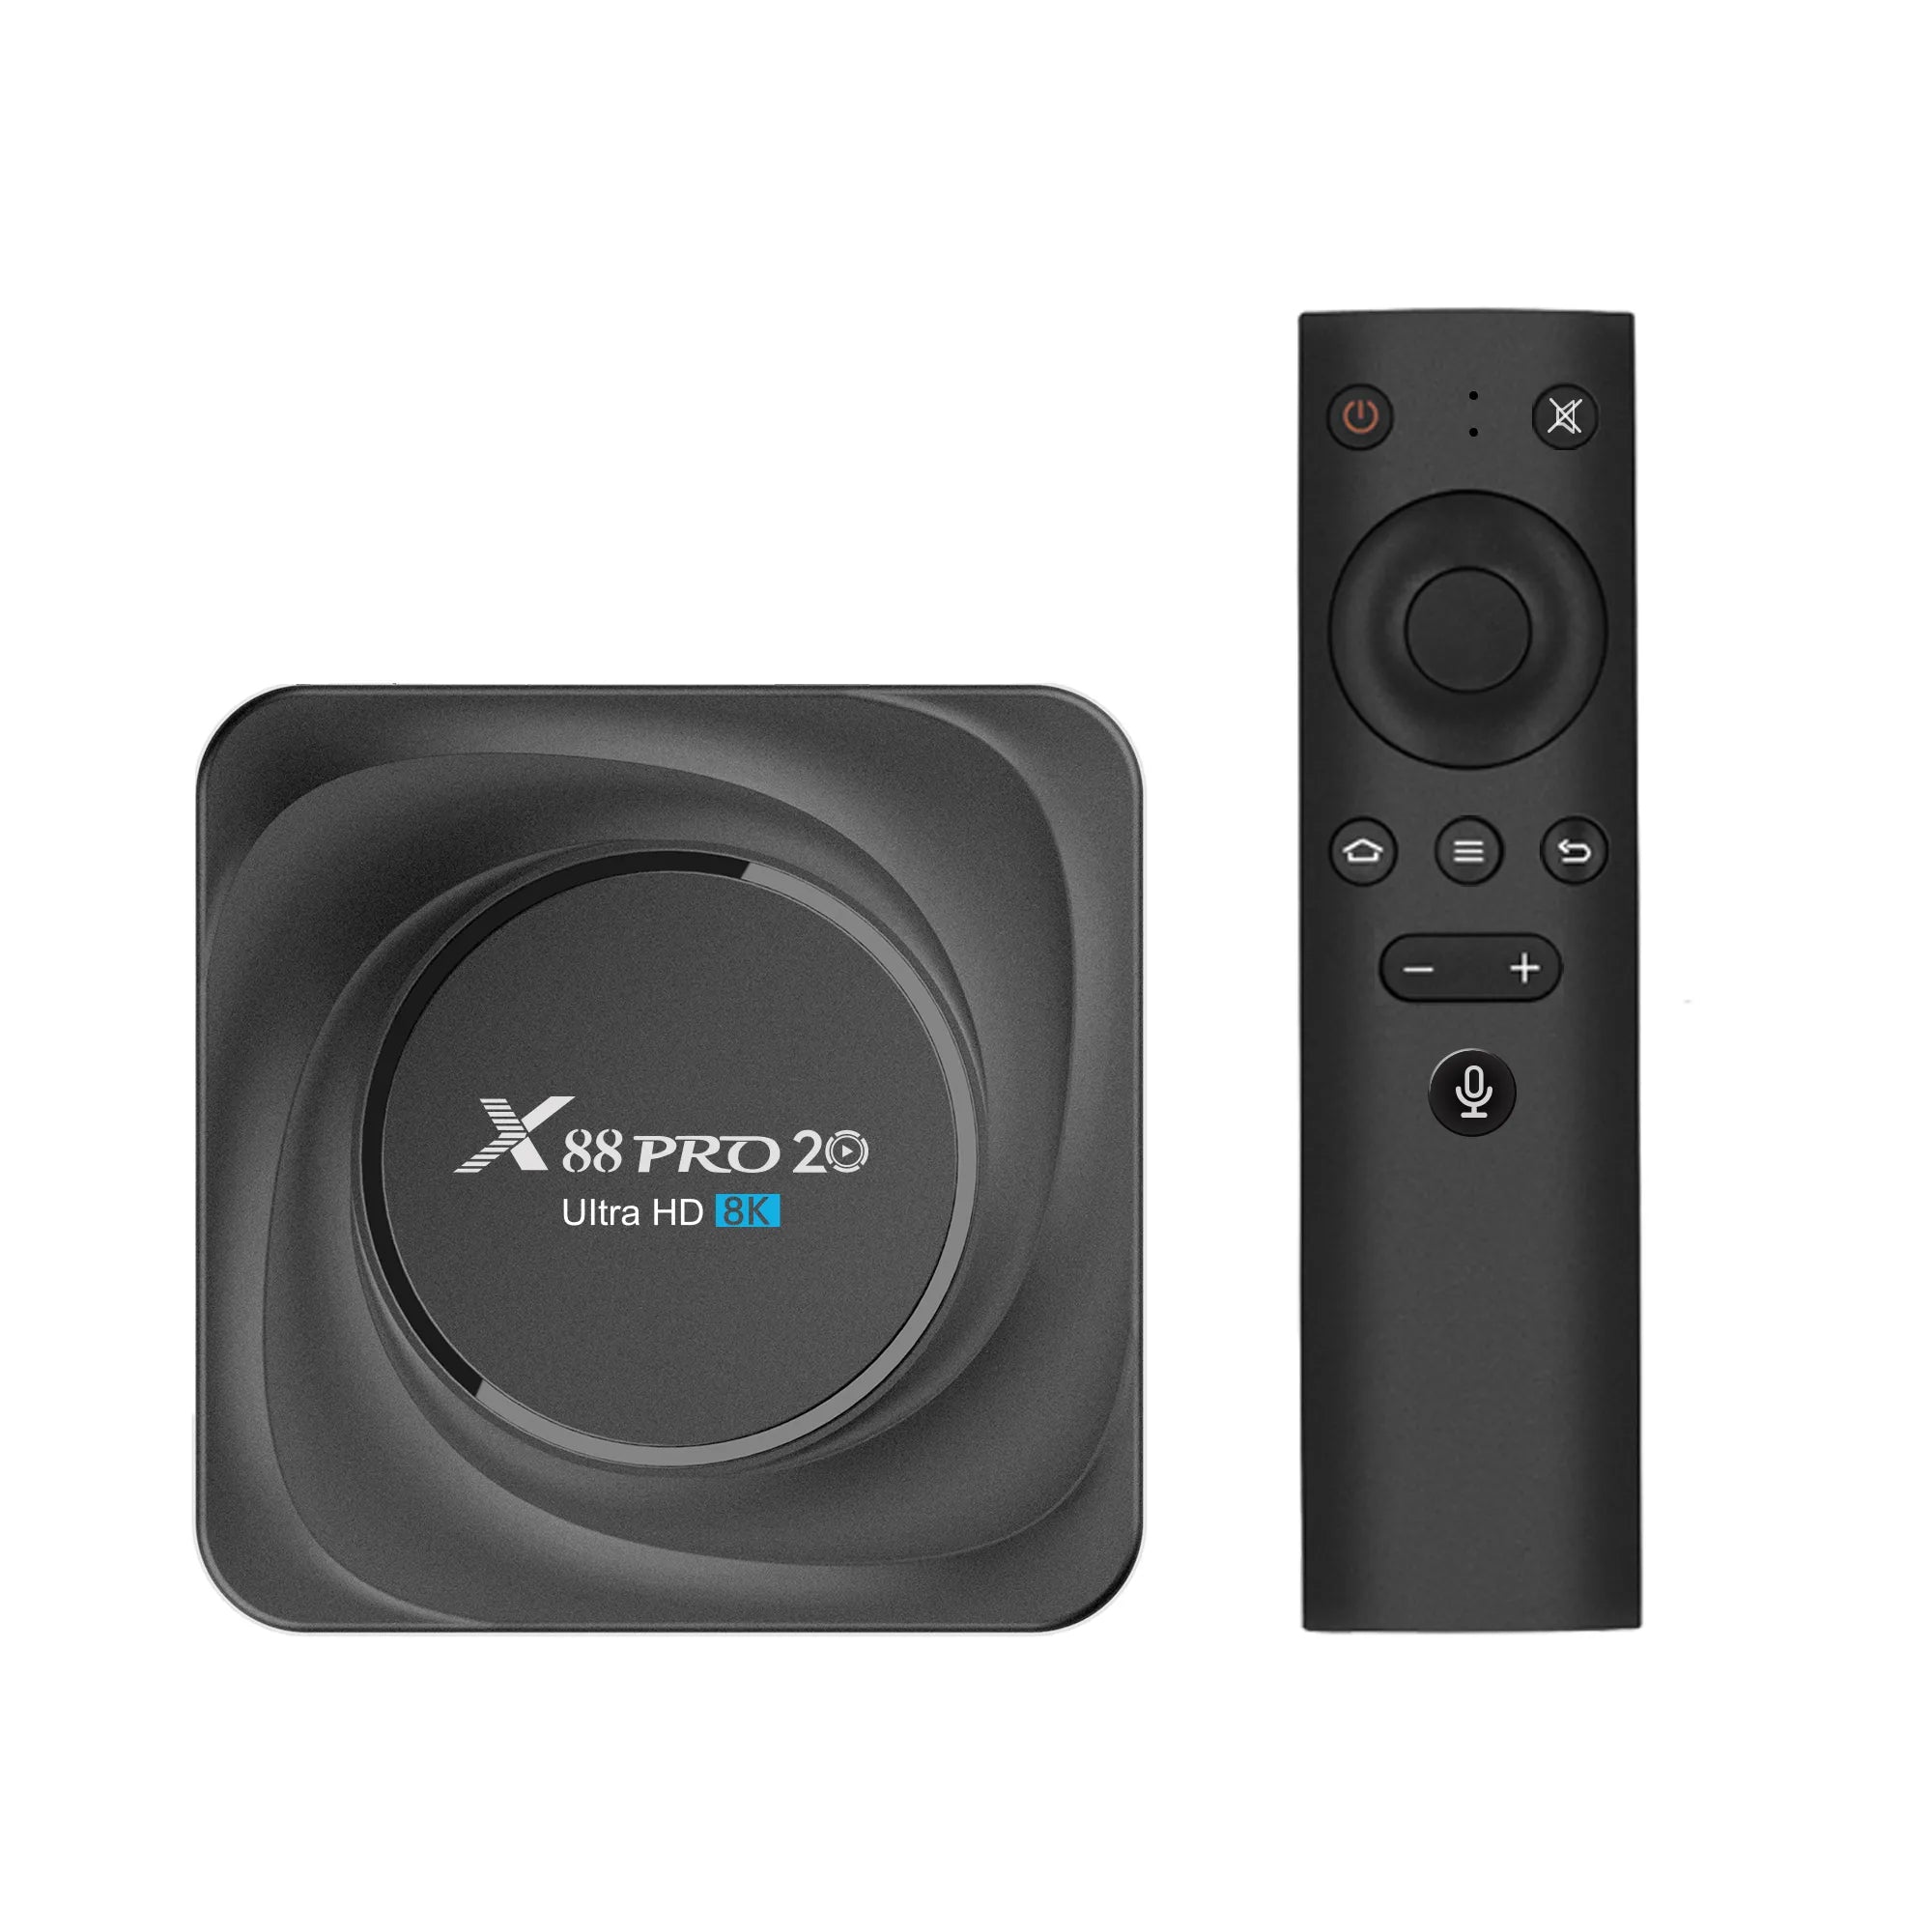 Smart TV Box X88 PRO 20 8K Ultra HD 8GB RAM + 64GB ROM Android 11.0, RK3566